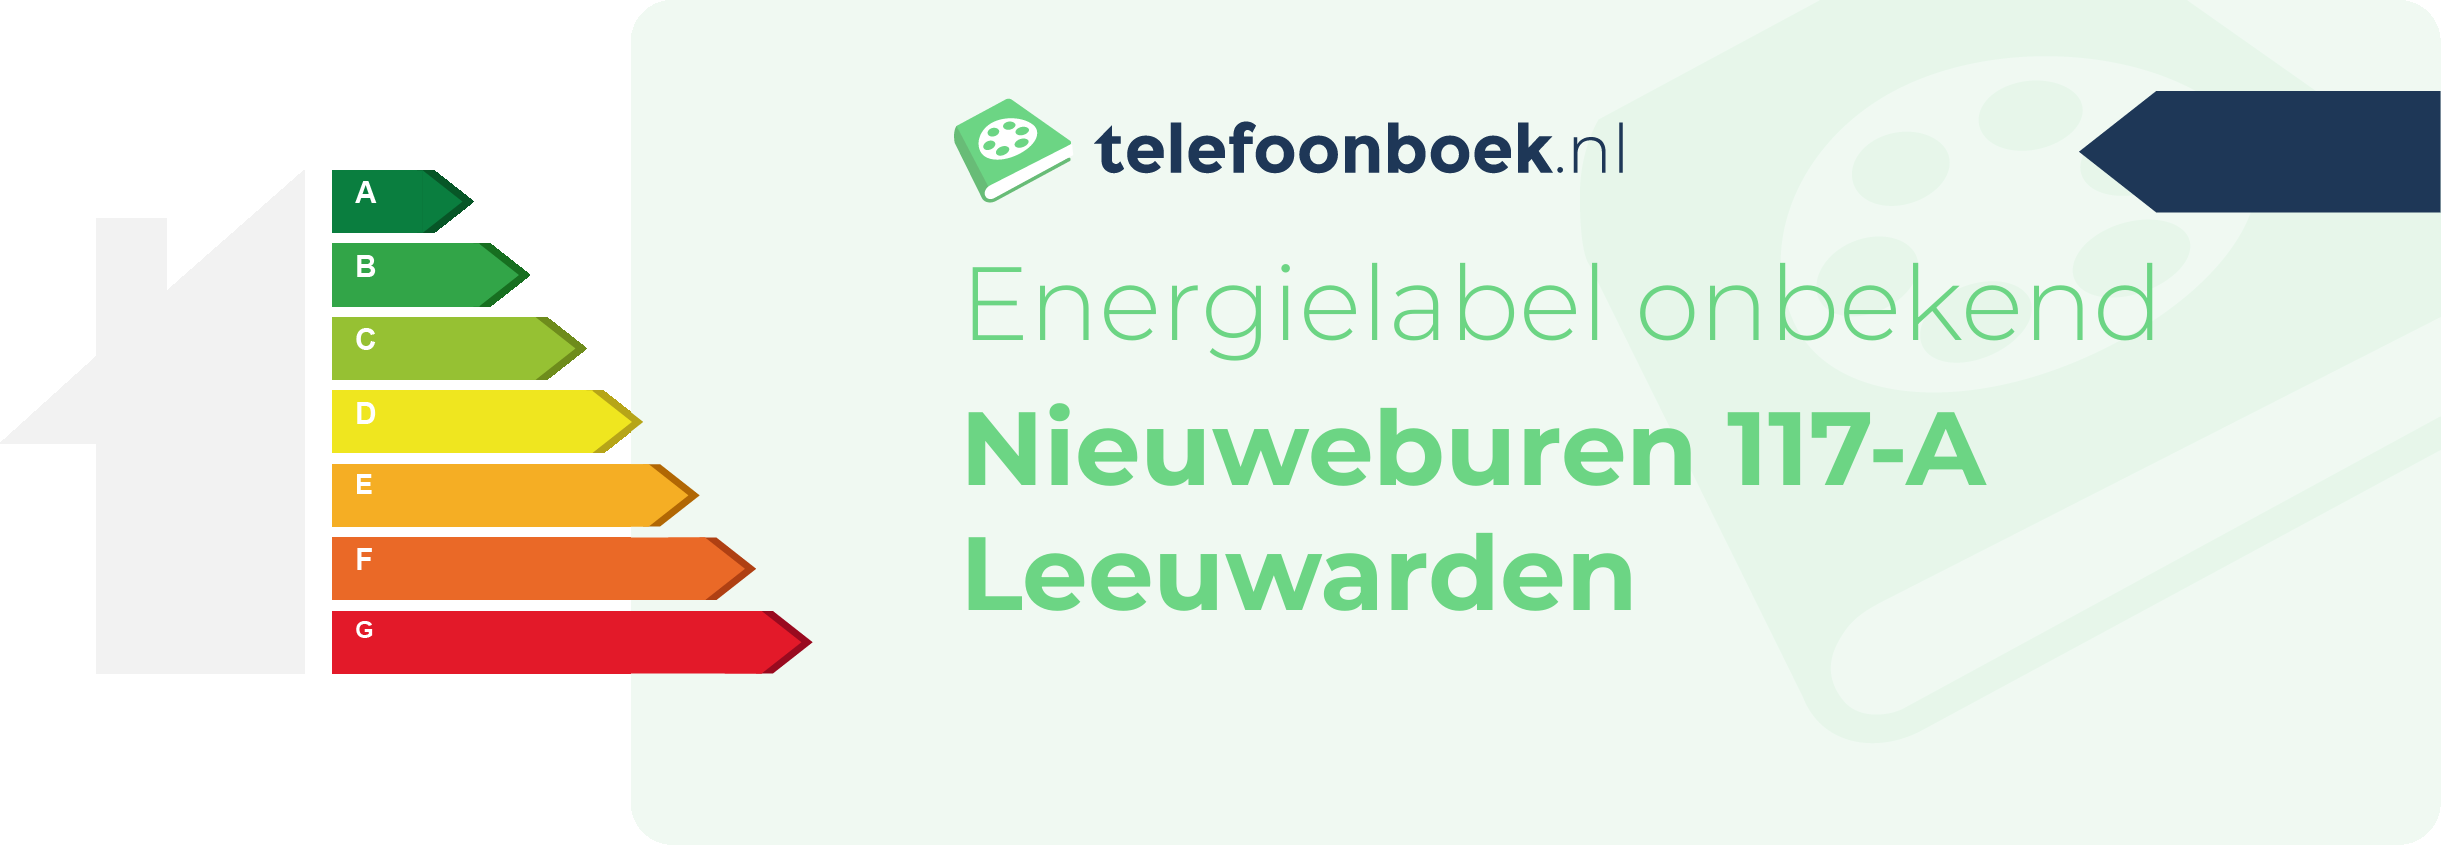 Energielabel Nieuweburen 117-A Leeuwarden